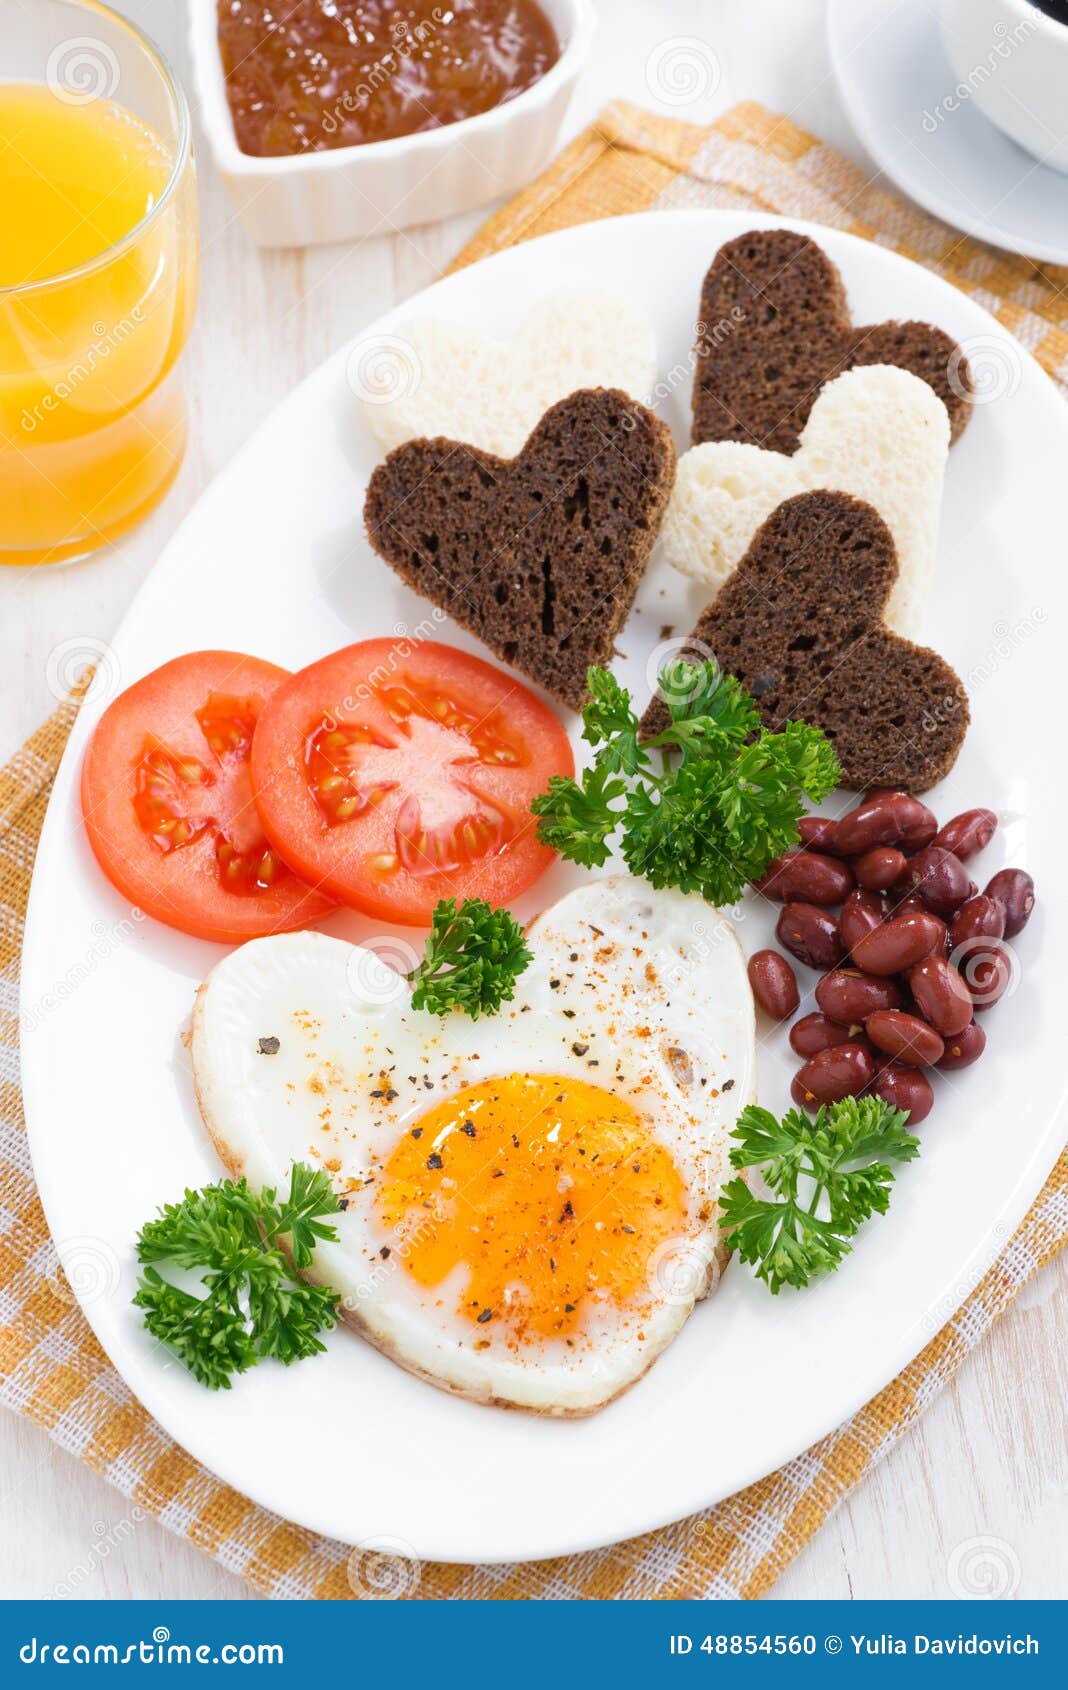 情人节早餐或早午餐 — 香肠和蔬菜 库存图片. 图片 包括有 概念, 午餐, 膳食, 早晨, 创造性, 饮料 - 217948927